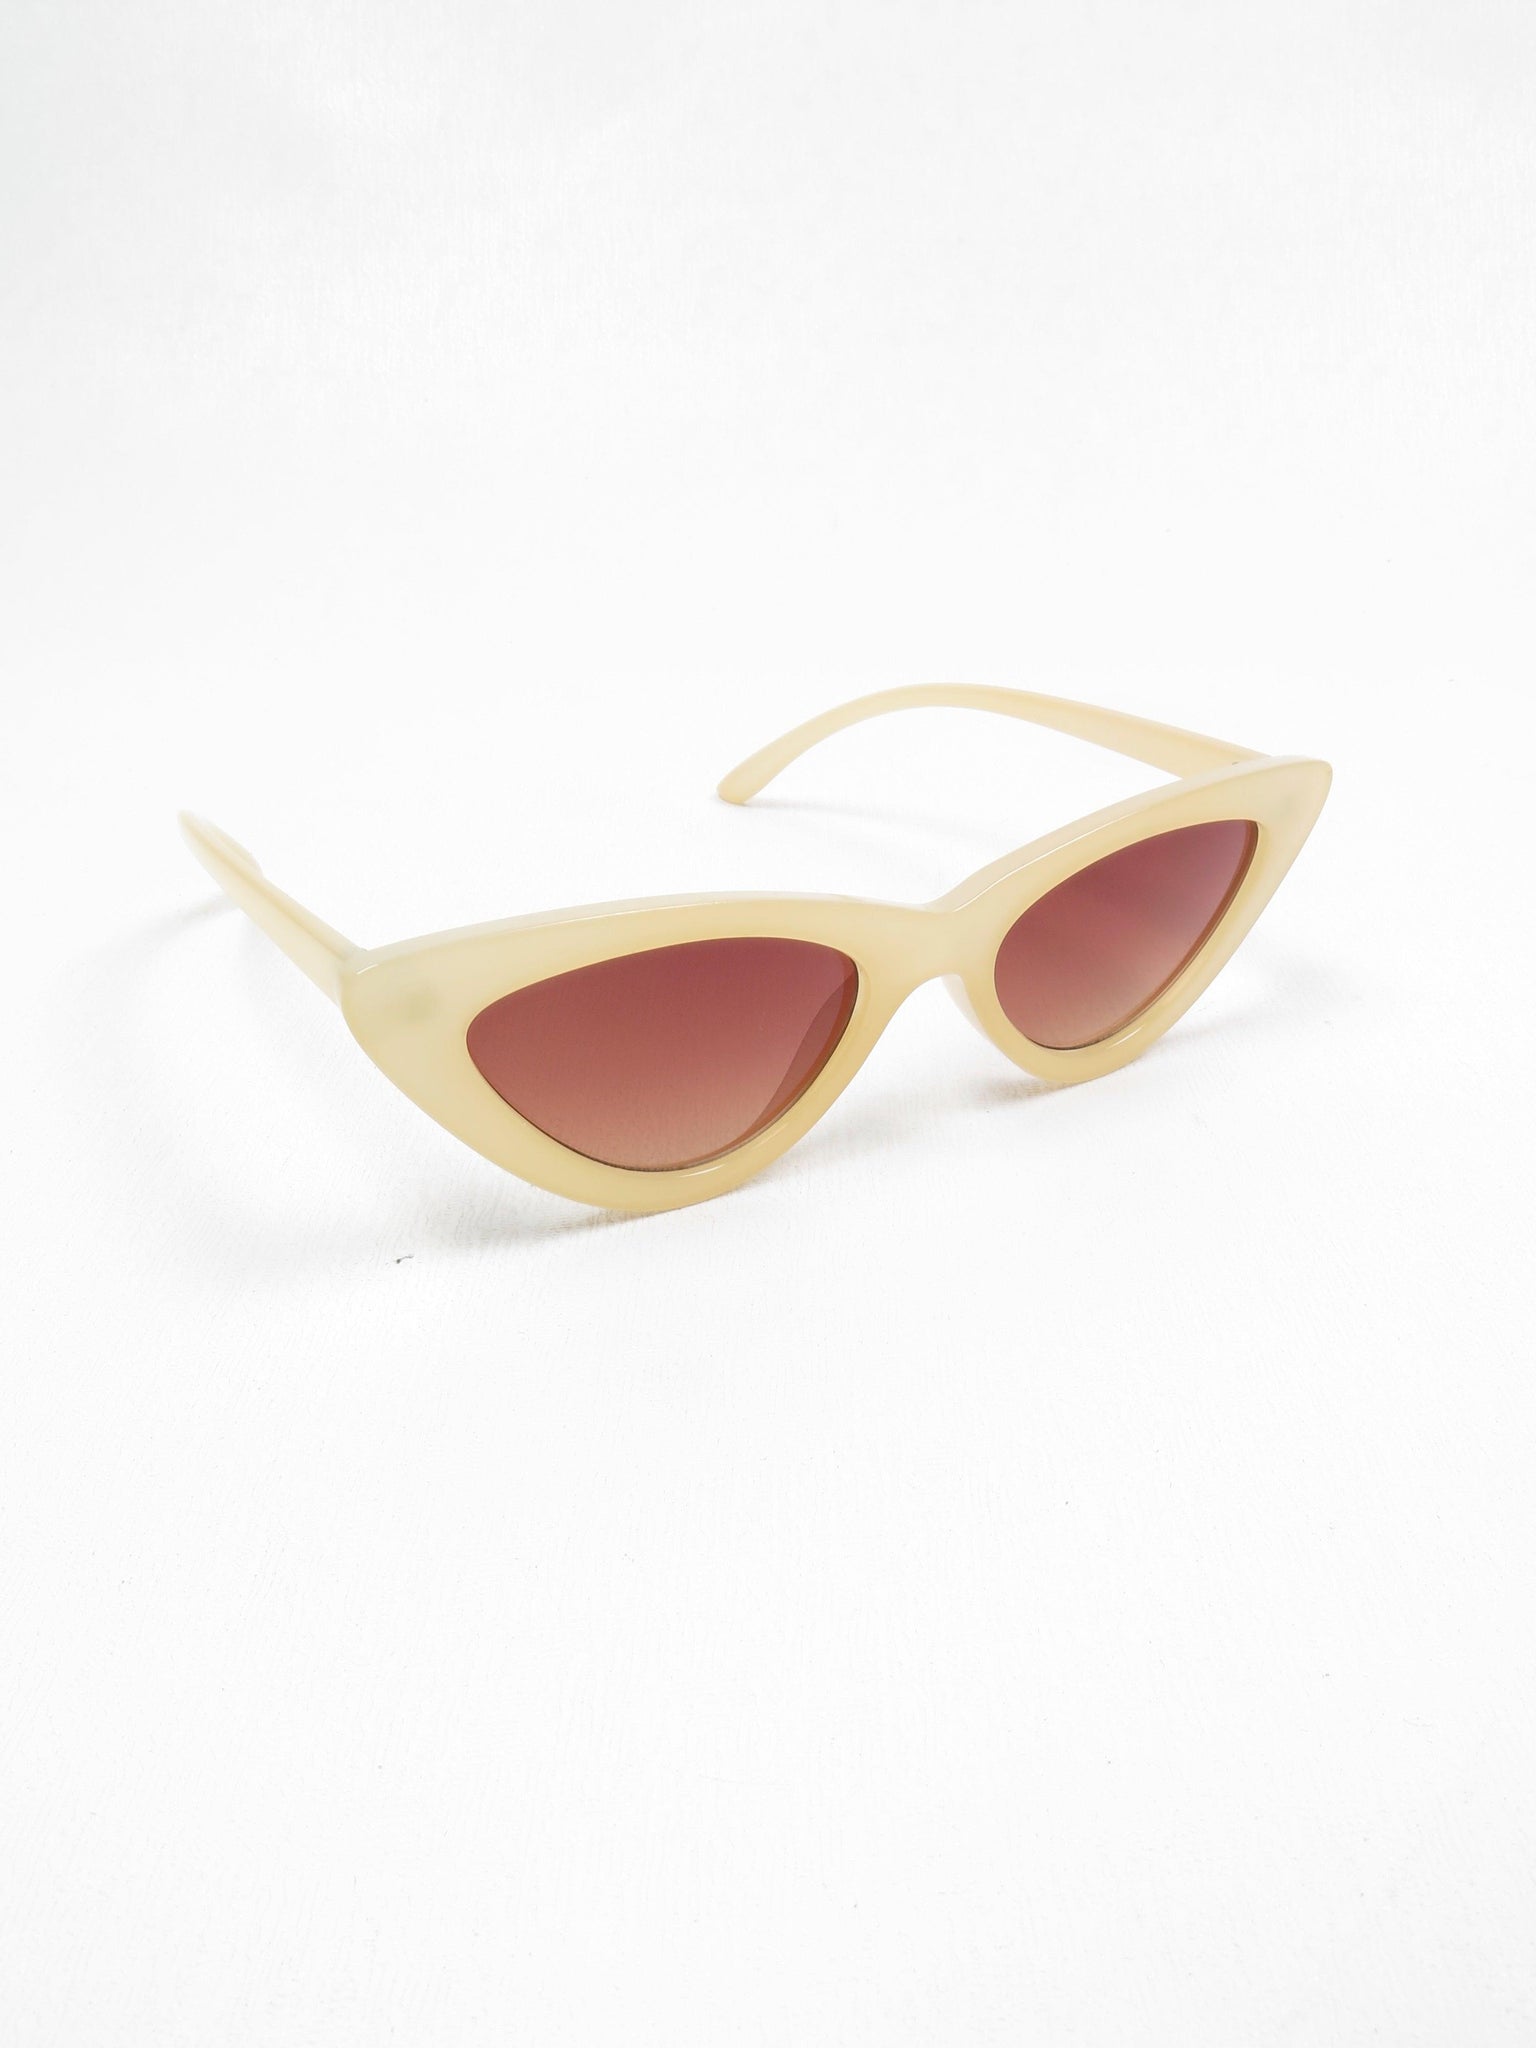 True Cat Sunglasses - The Harlequin